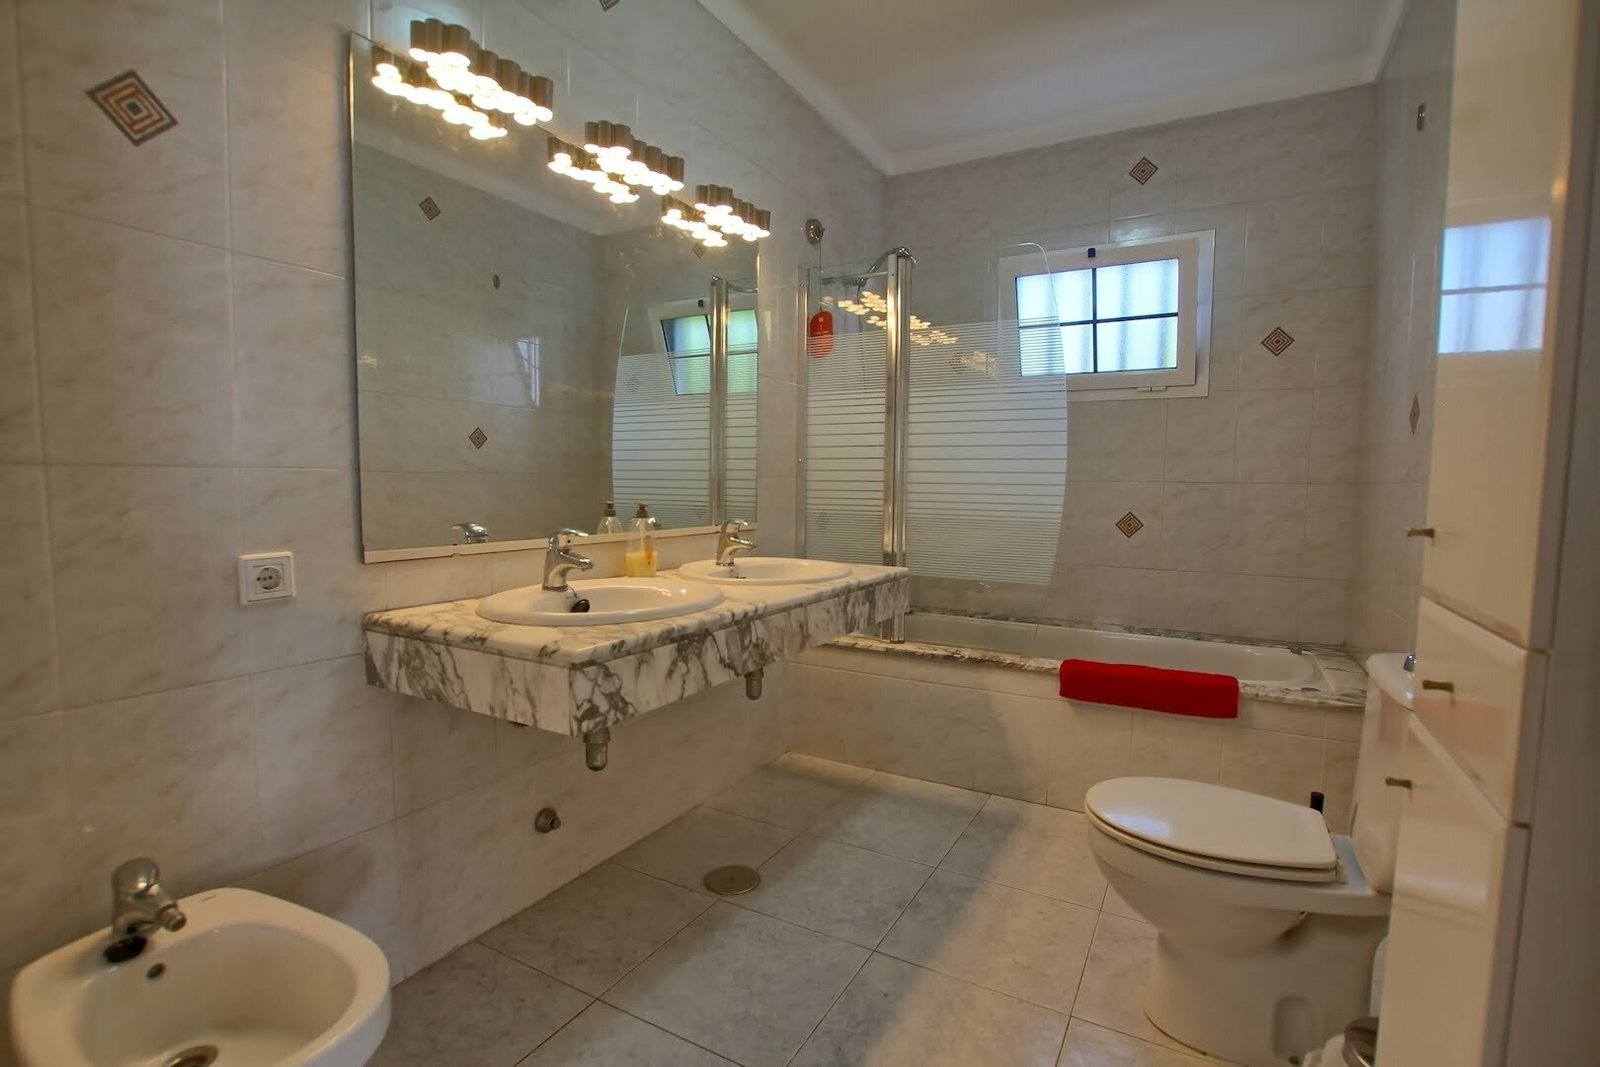 Villa Del Sueno - General Bathroom